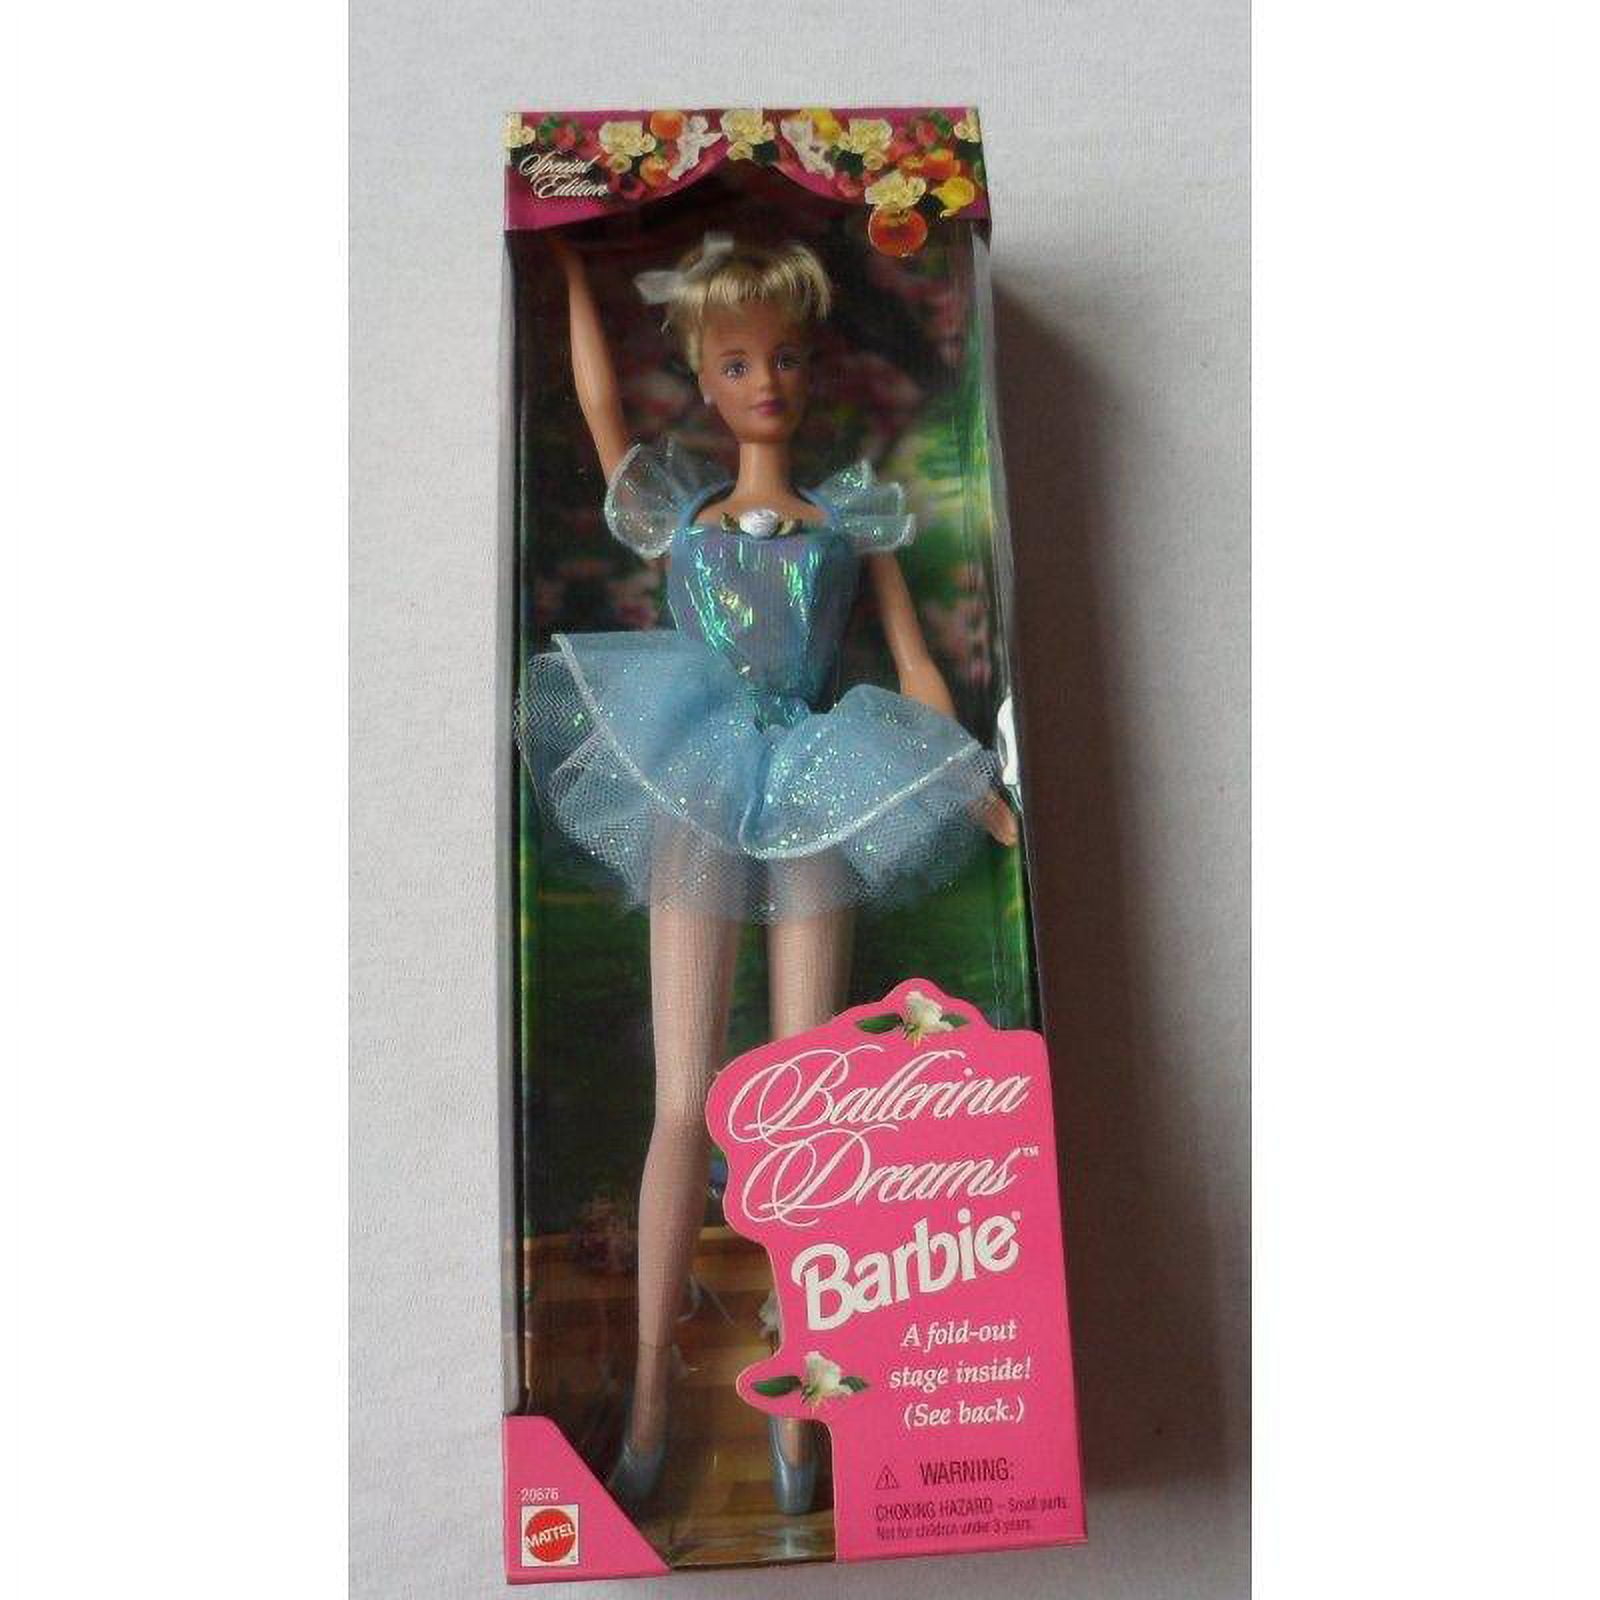 Ballerina Dreams Barbie Doll Edición especial (pelo rojizo) con etapa  plegable (1998)